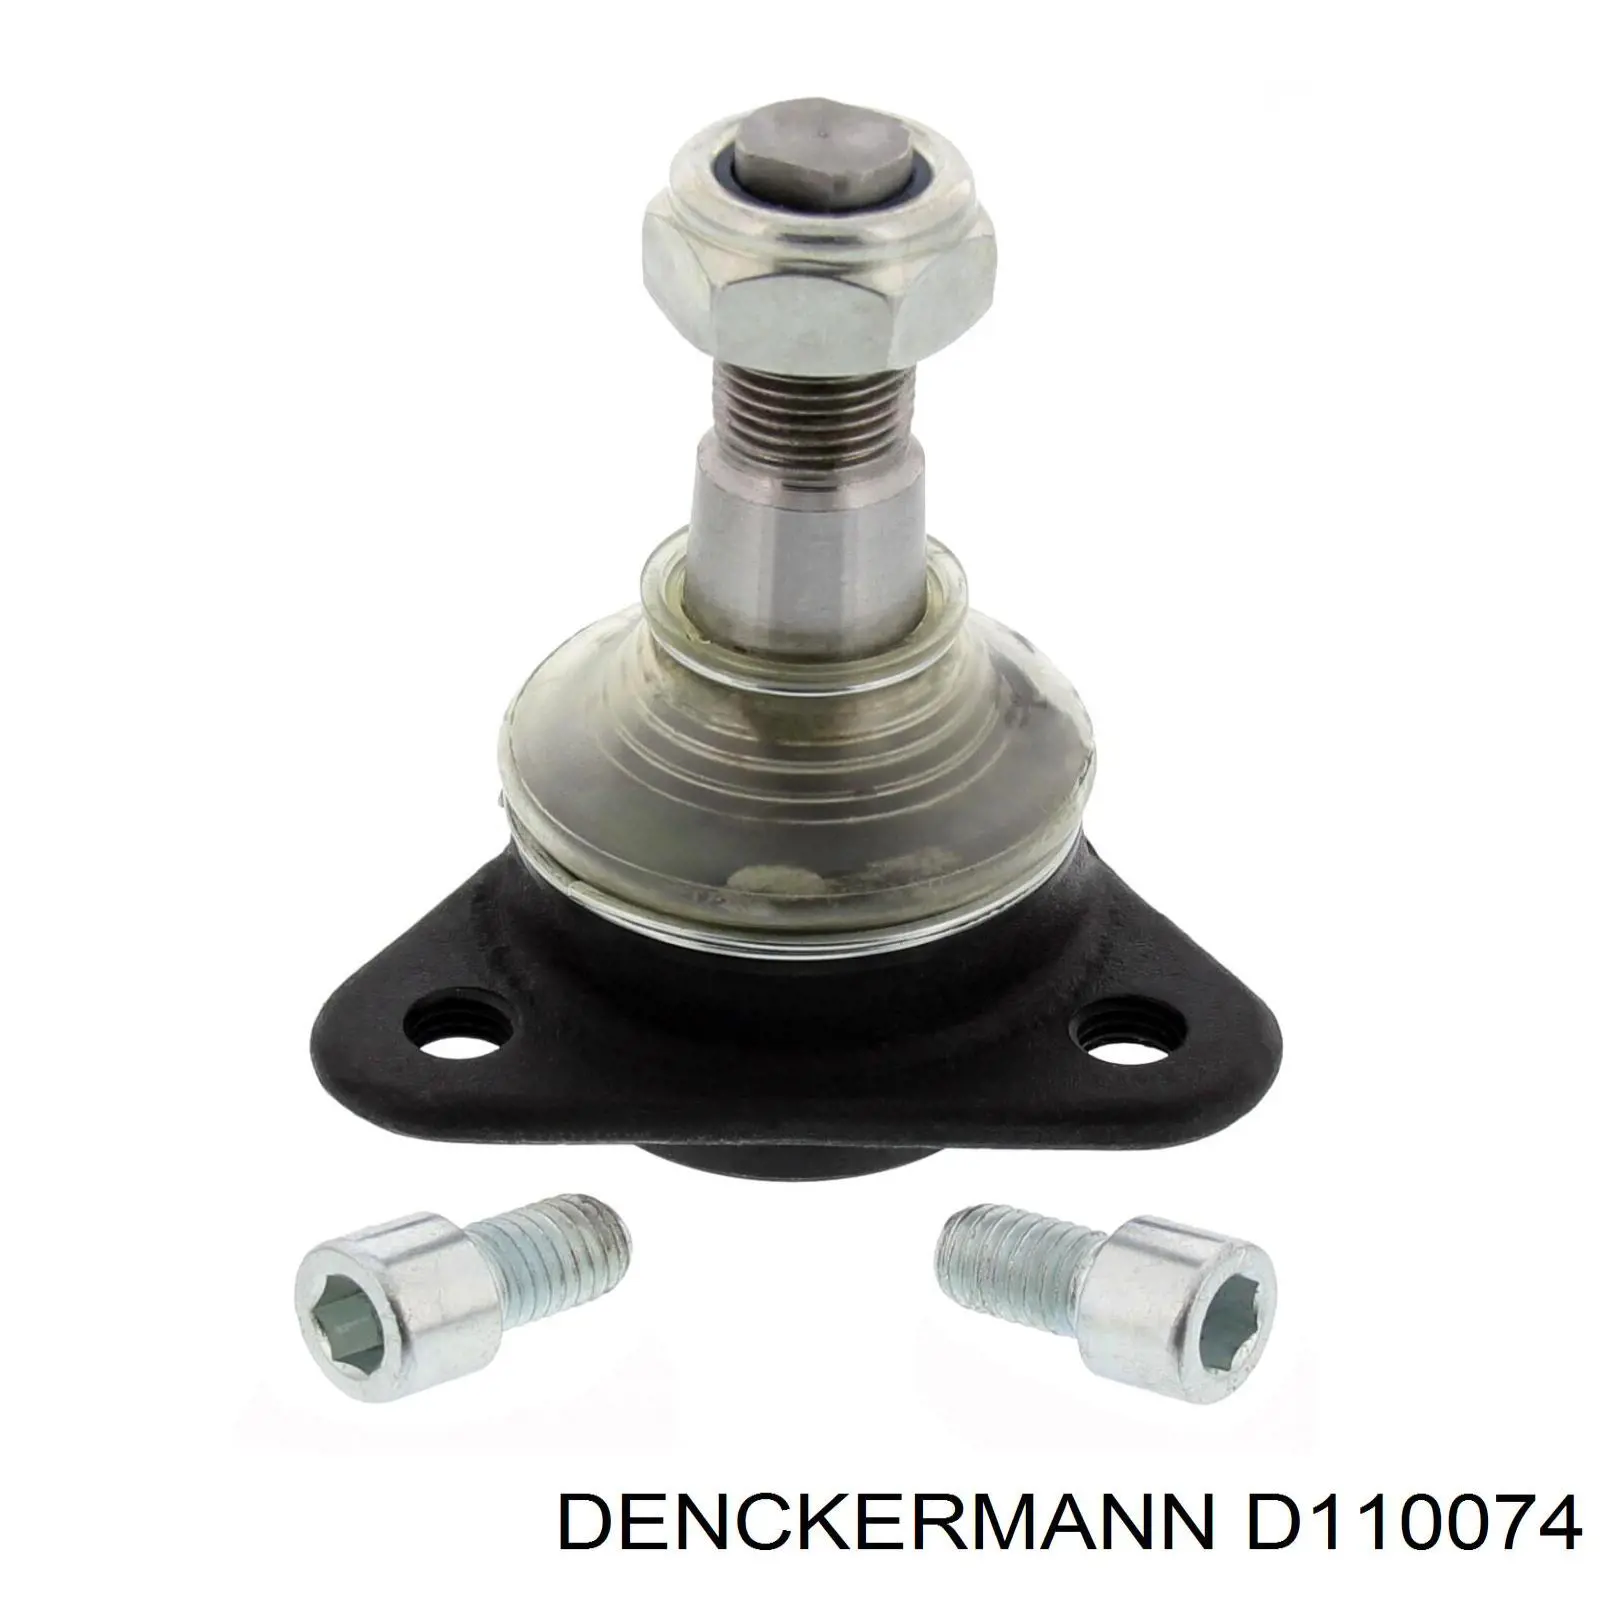 D110074 Denckermann rótula de suspensión